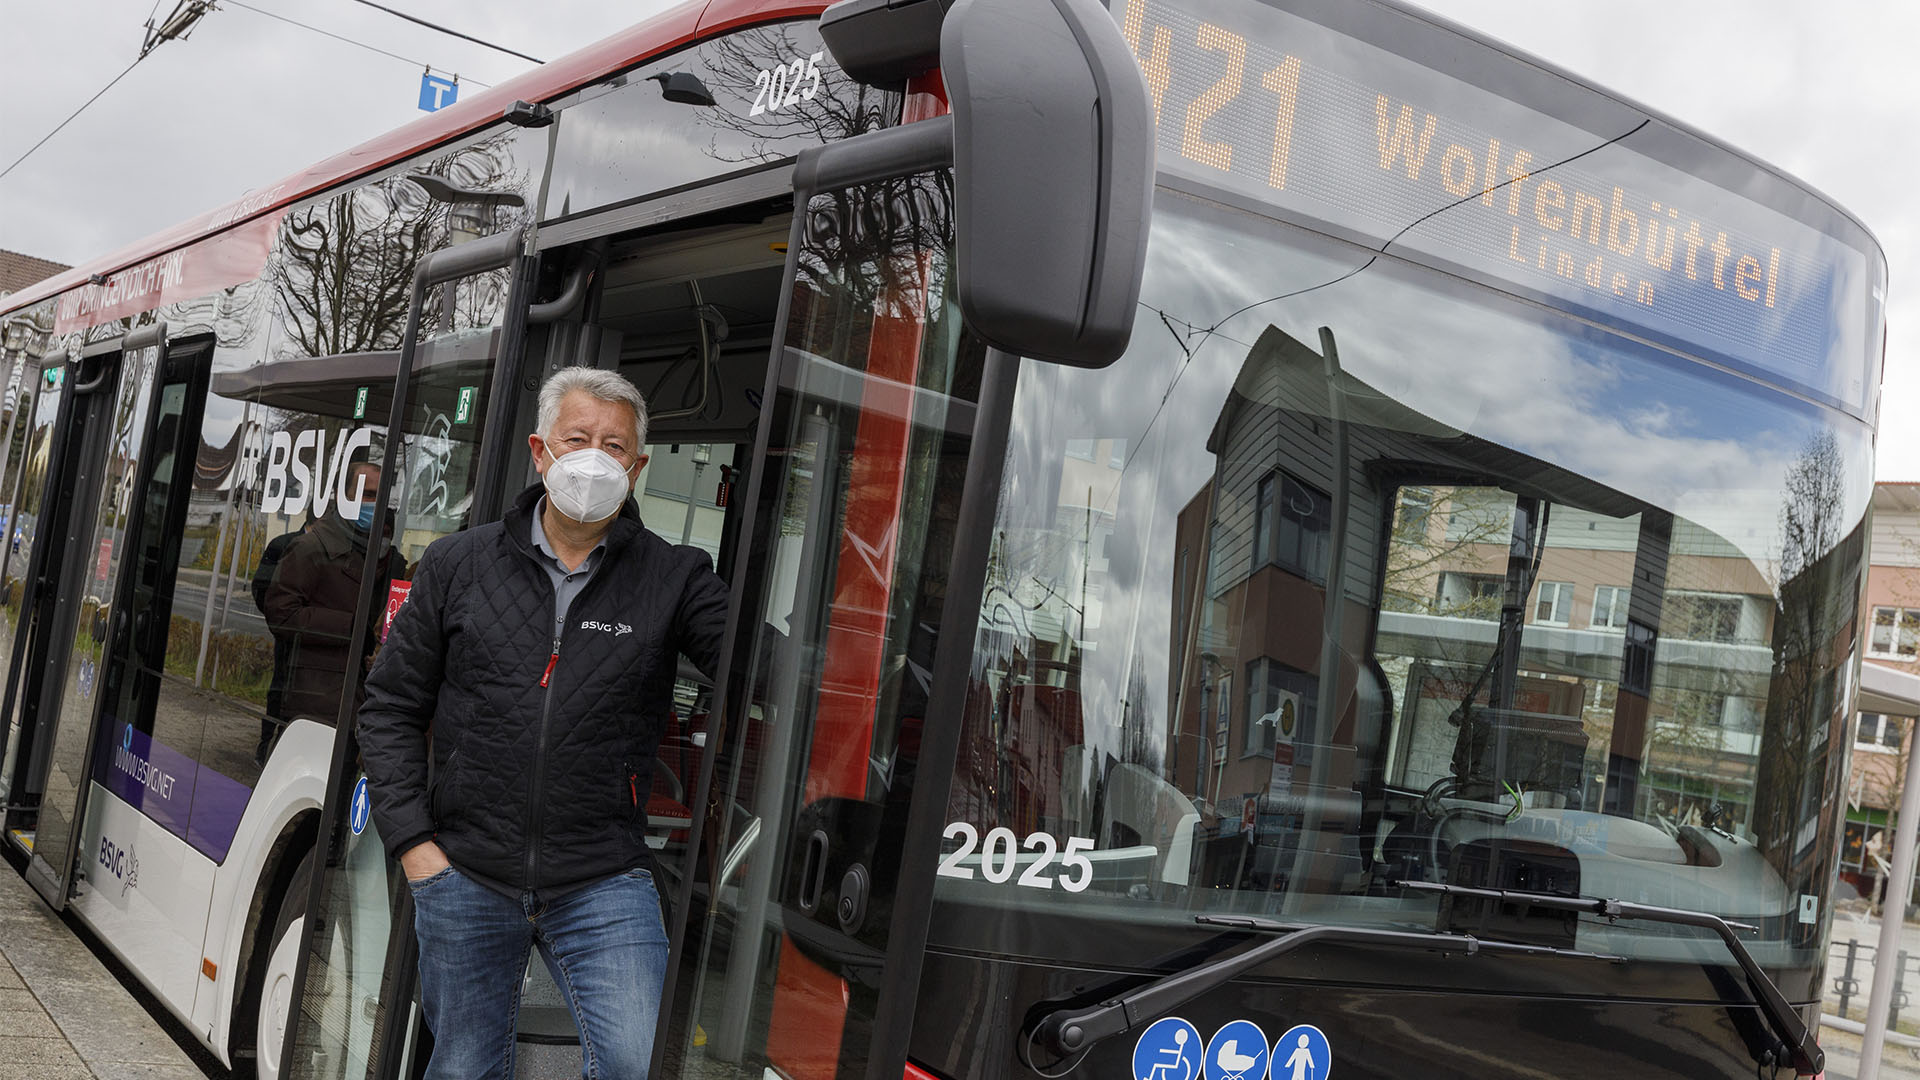 Ein Mann steht neben einem Bus, der im Sichtfenster "421 Wolfenbüttel" anzeigt.